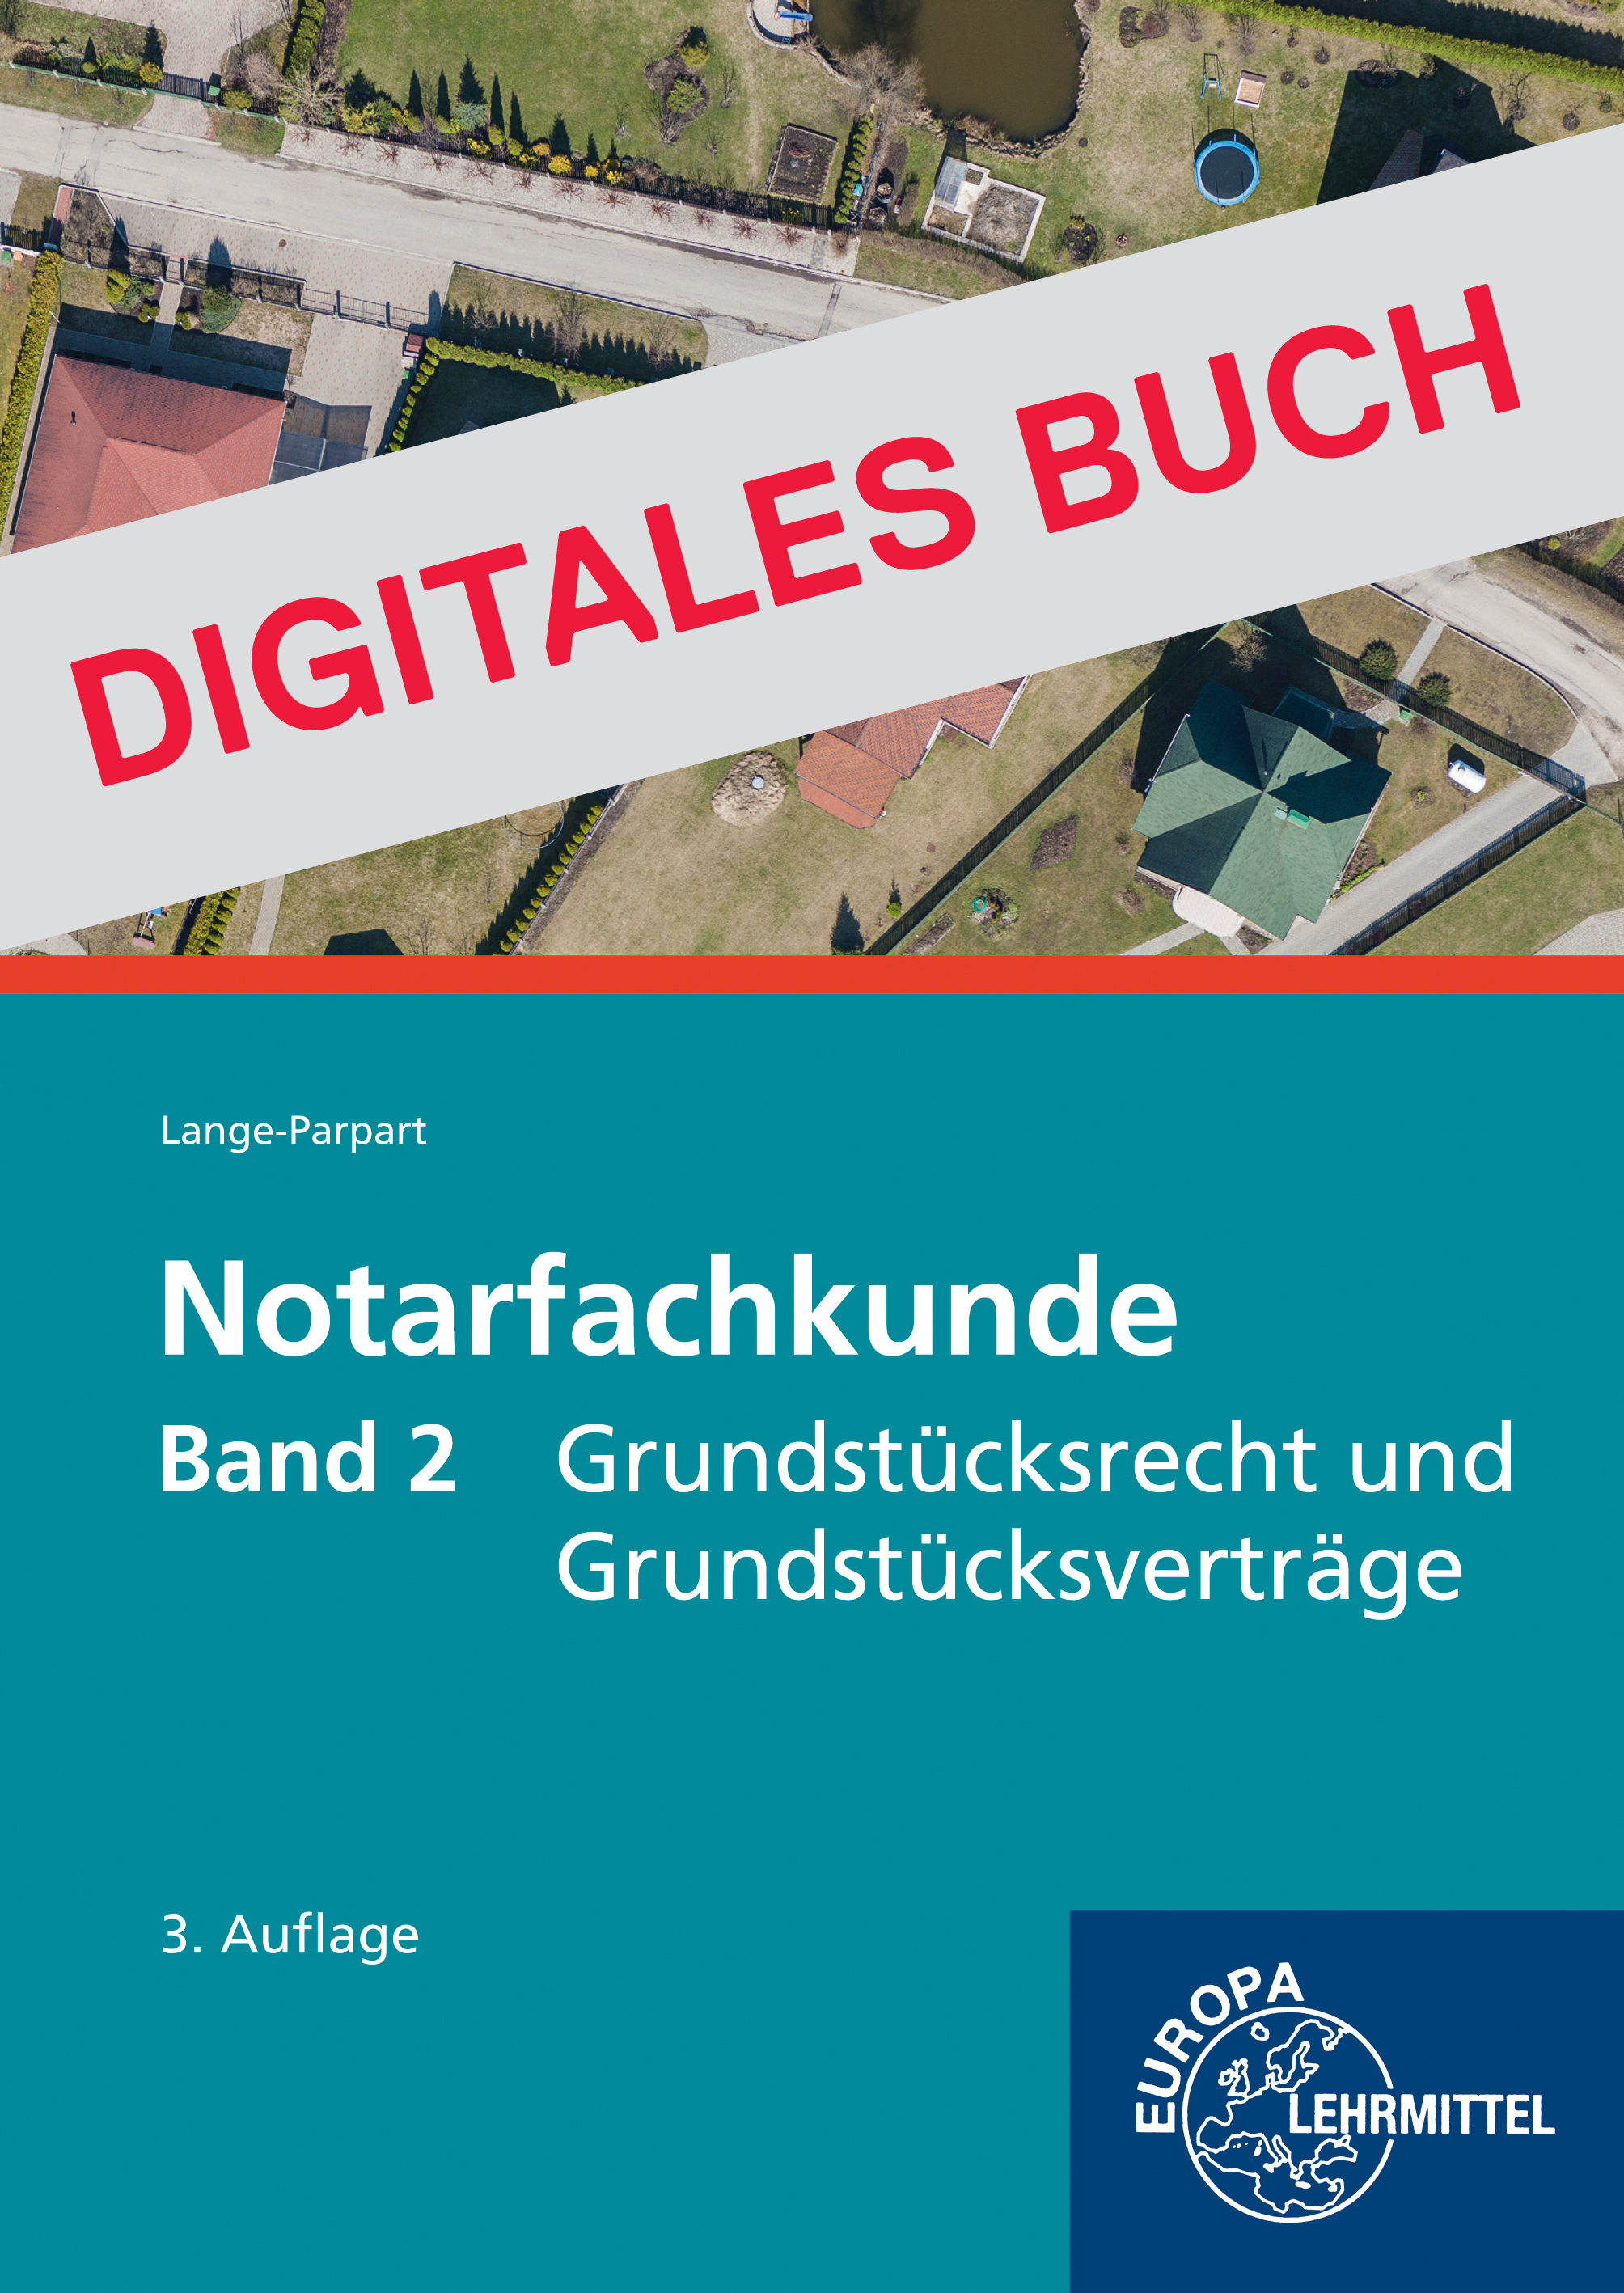 Notarfachkunde - Grundstücksrecht und Grundstücksverträge Band 2 Digitales Buch